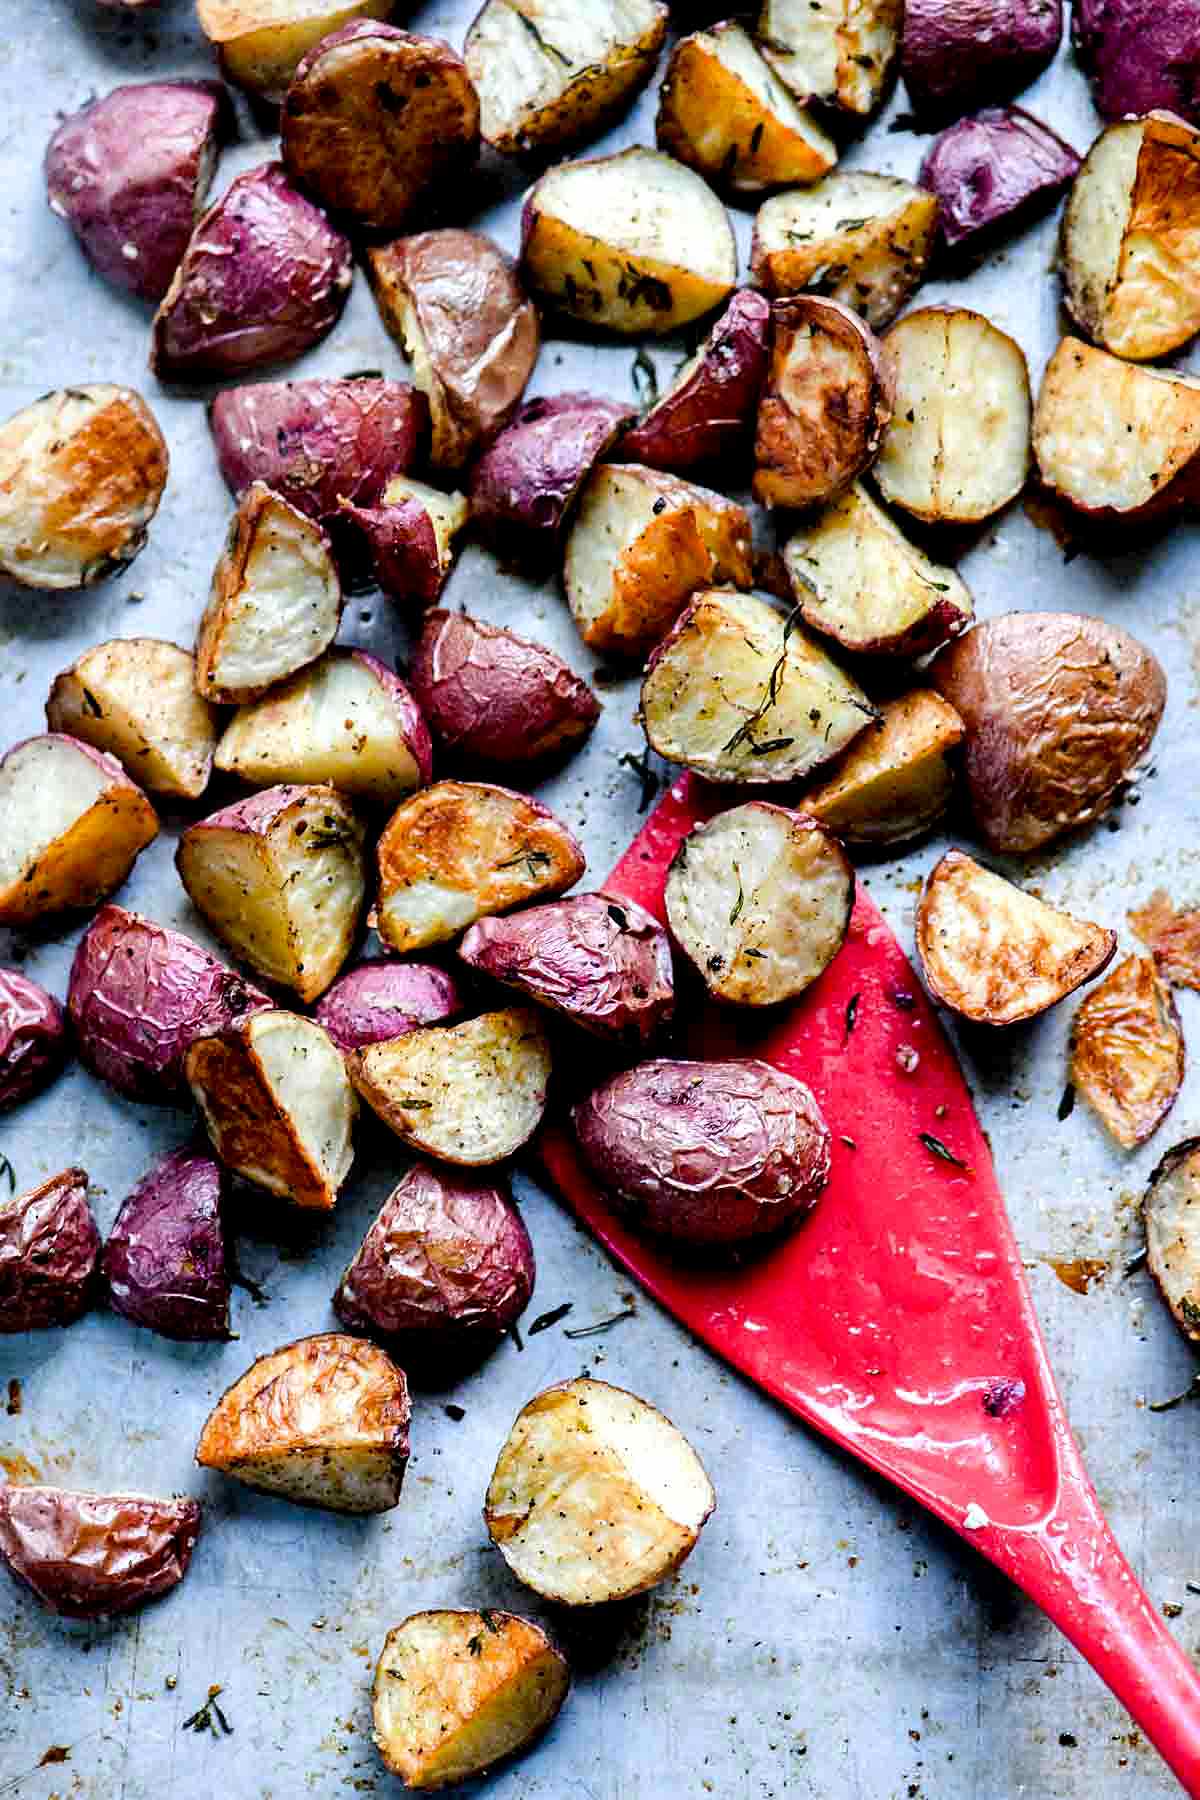 Meilleures pommes de terre croustillantes rôties au four | foodiecrush.com #patates #four #rôties #facile